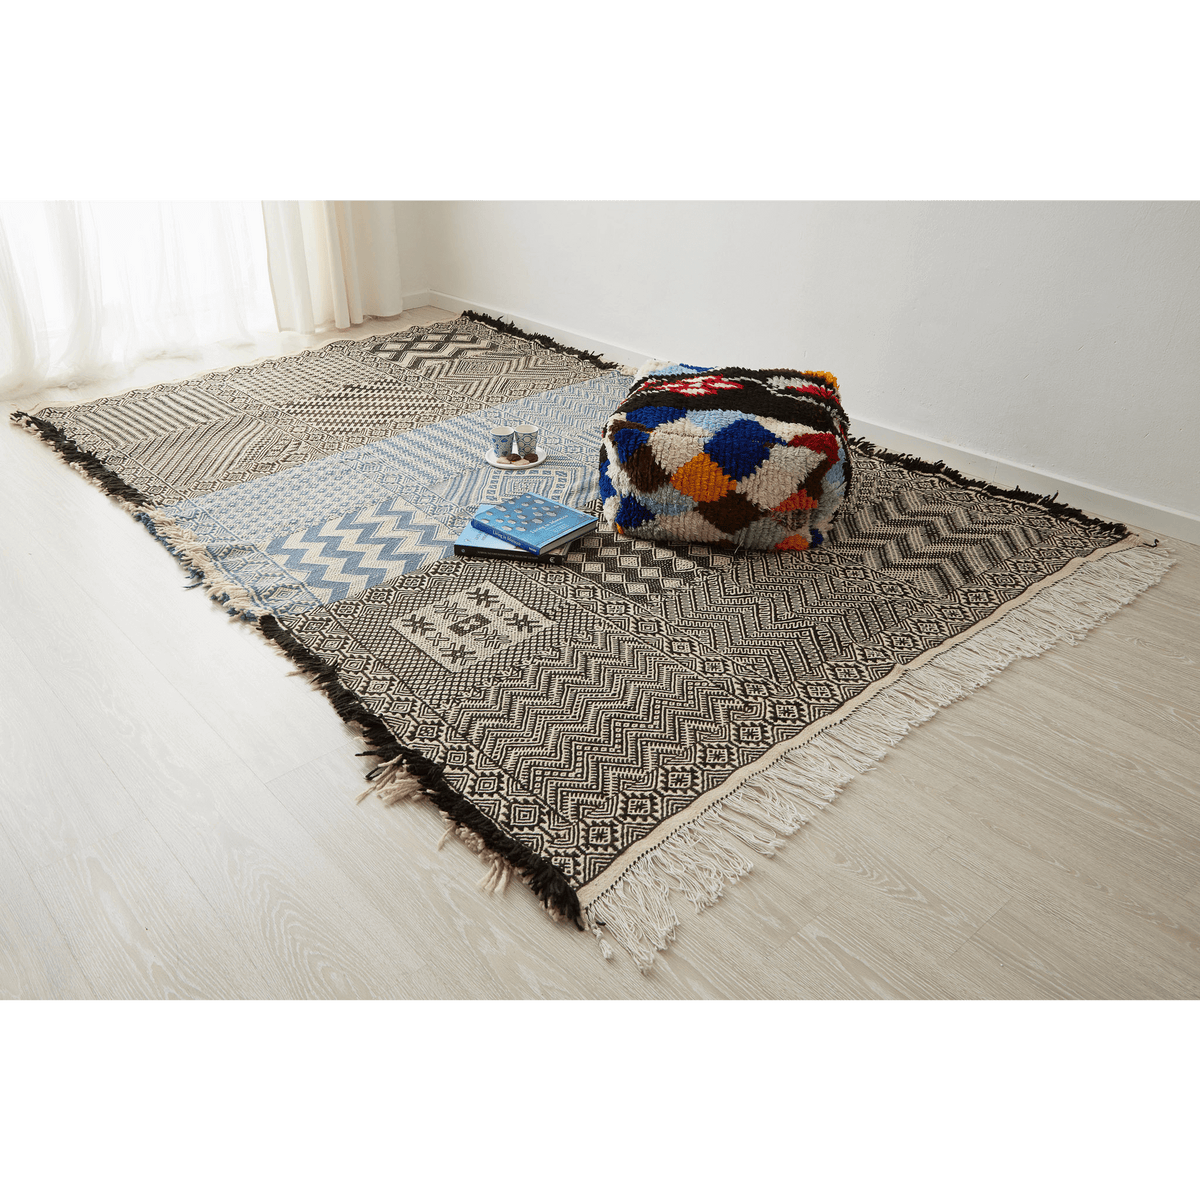 tappeto zanafi taznakht grande a tessitura piatta bianco nero e azzurro con frange su tre lati disteso sul pavimento